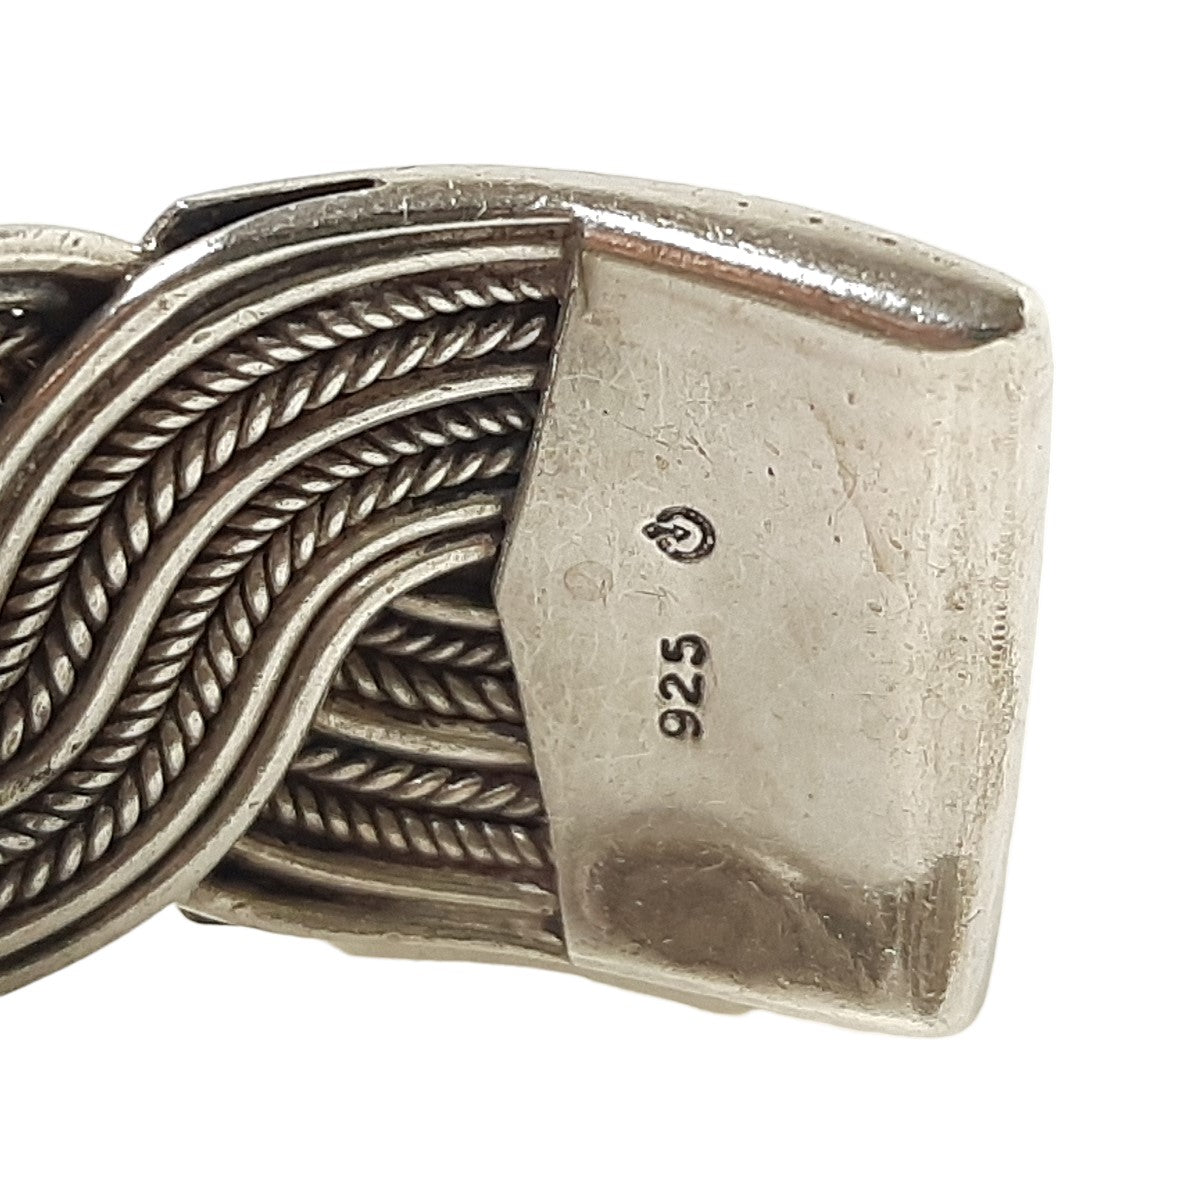 ヴィンテージ シルバー925 ブレイデッド バングル 53g / Vintage Sterling Silver Braided Cuff Bracelet